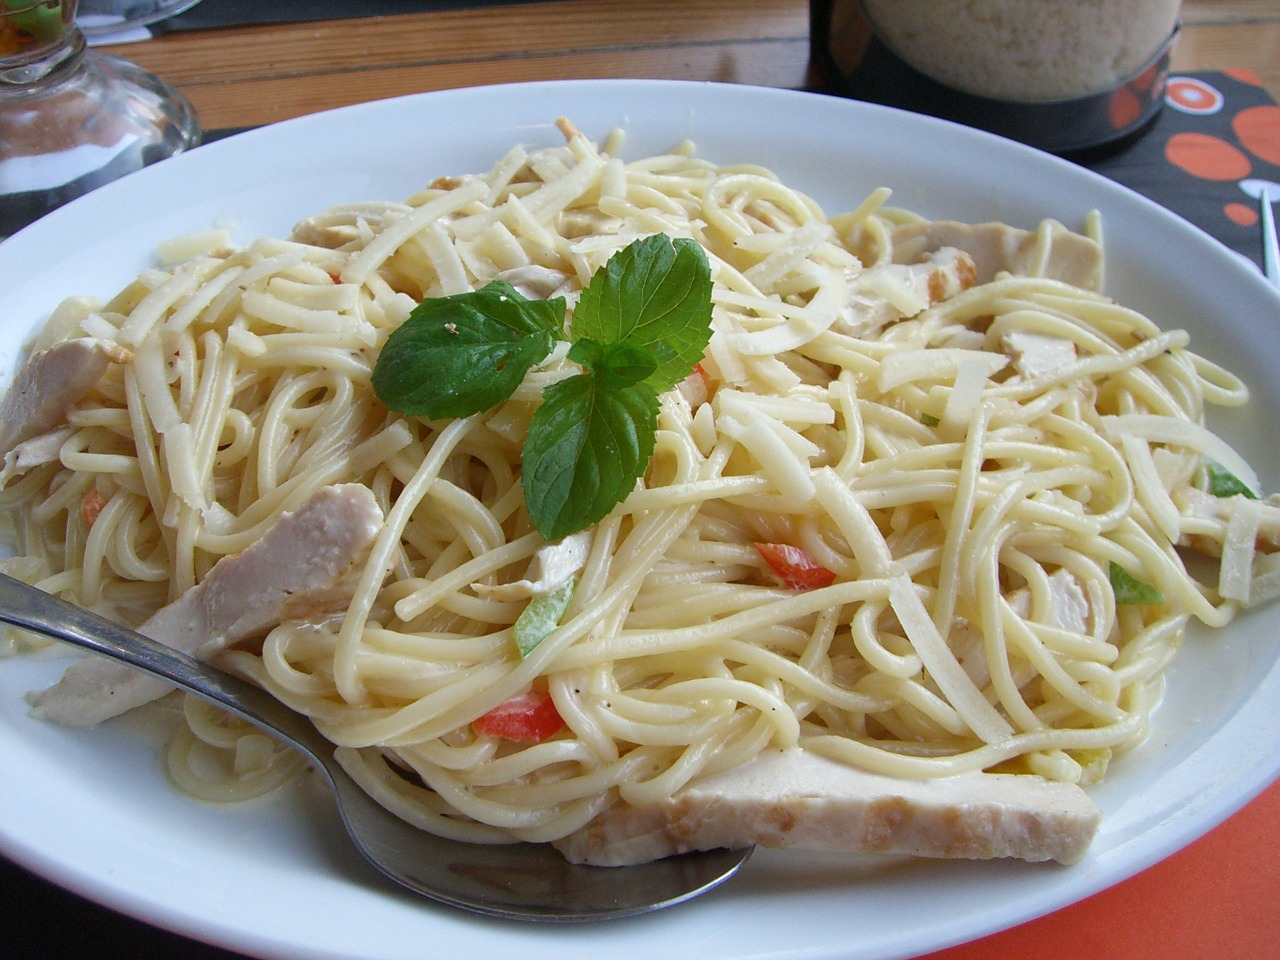 Creamy Chicken and Spaghetti Casserole